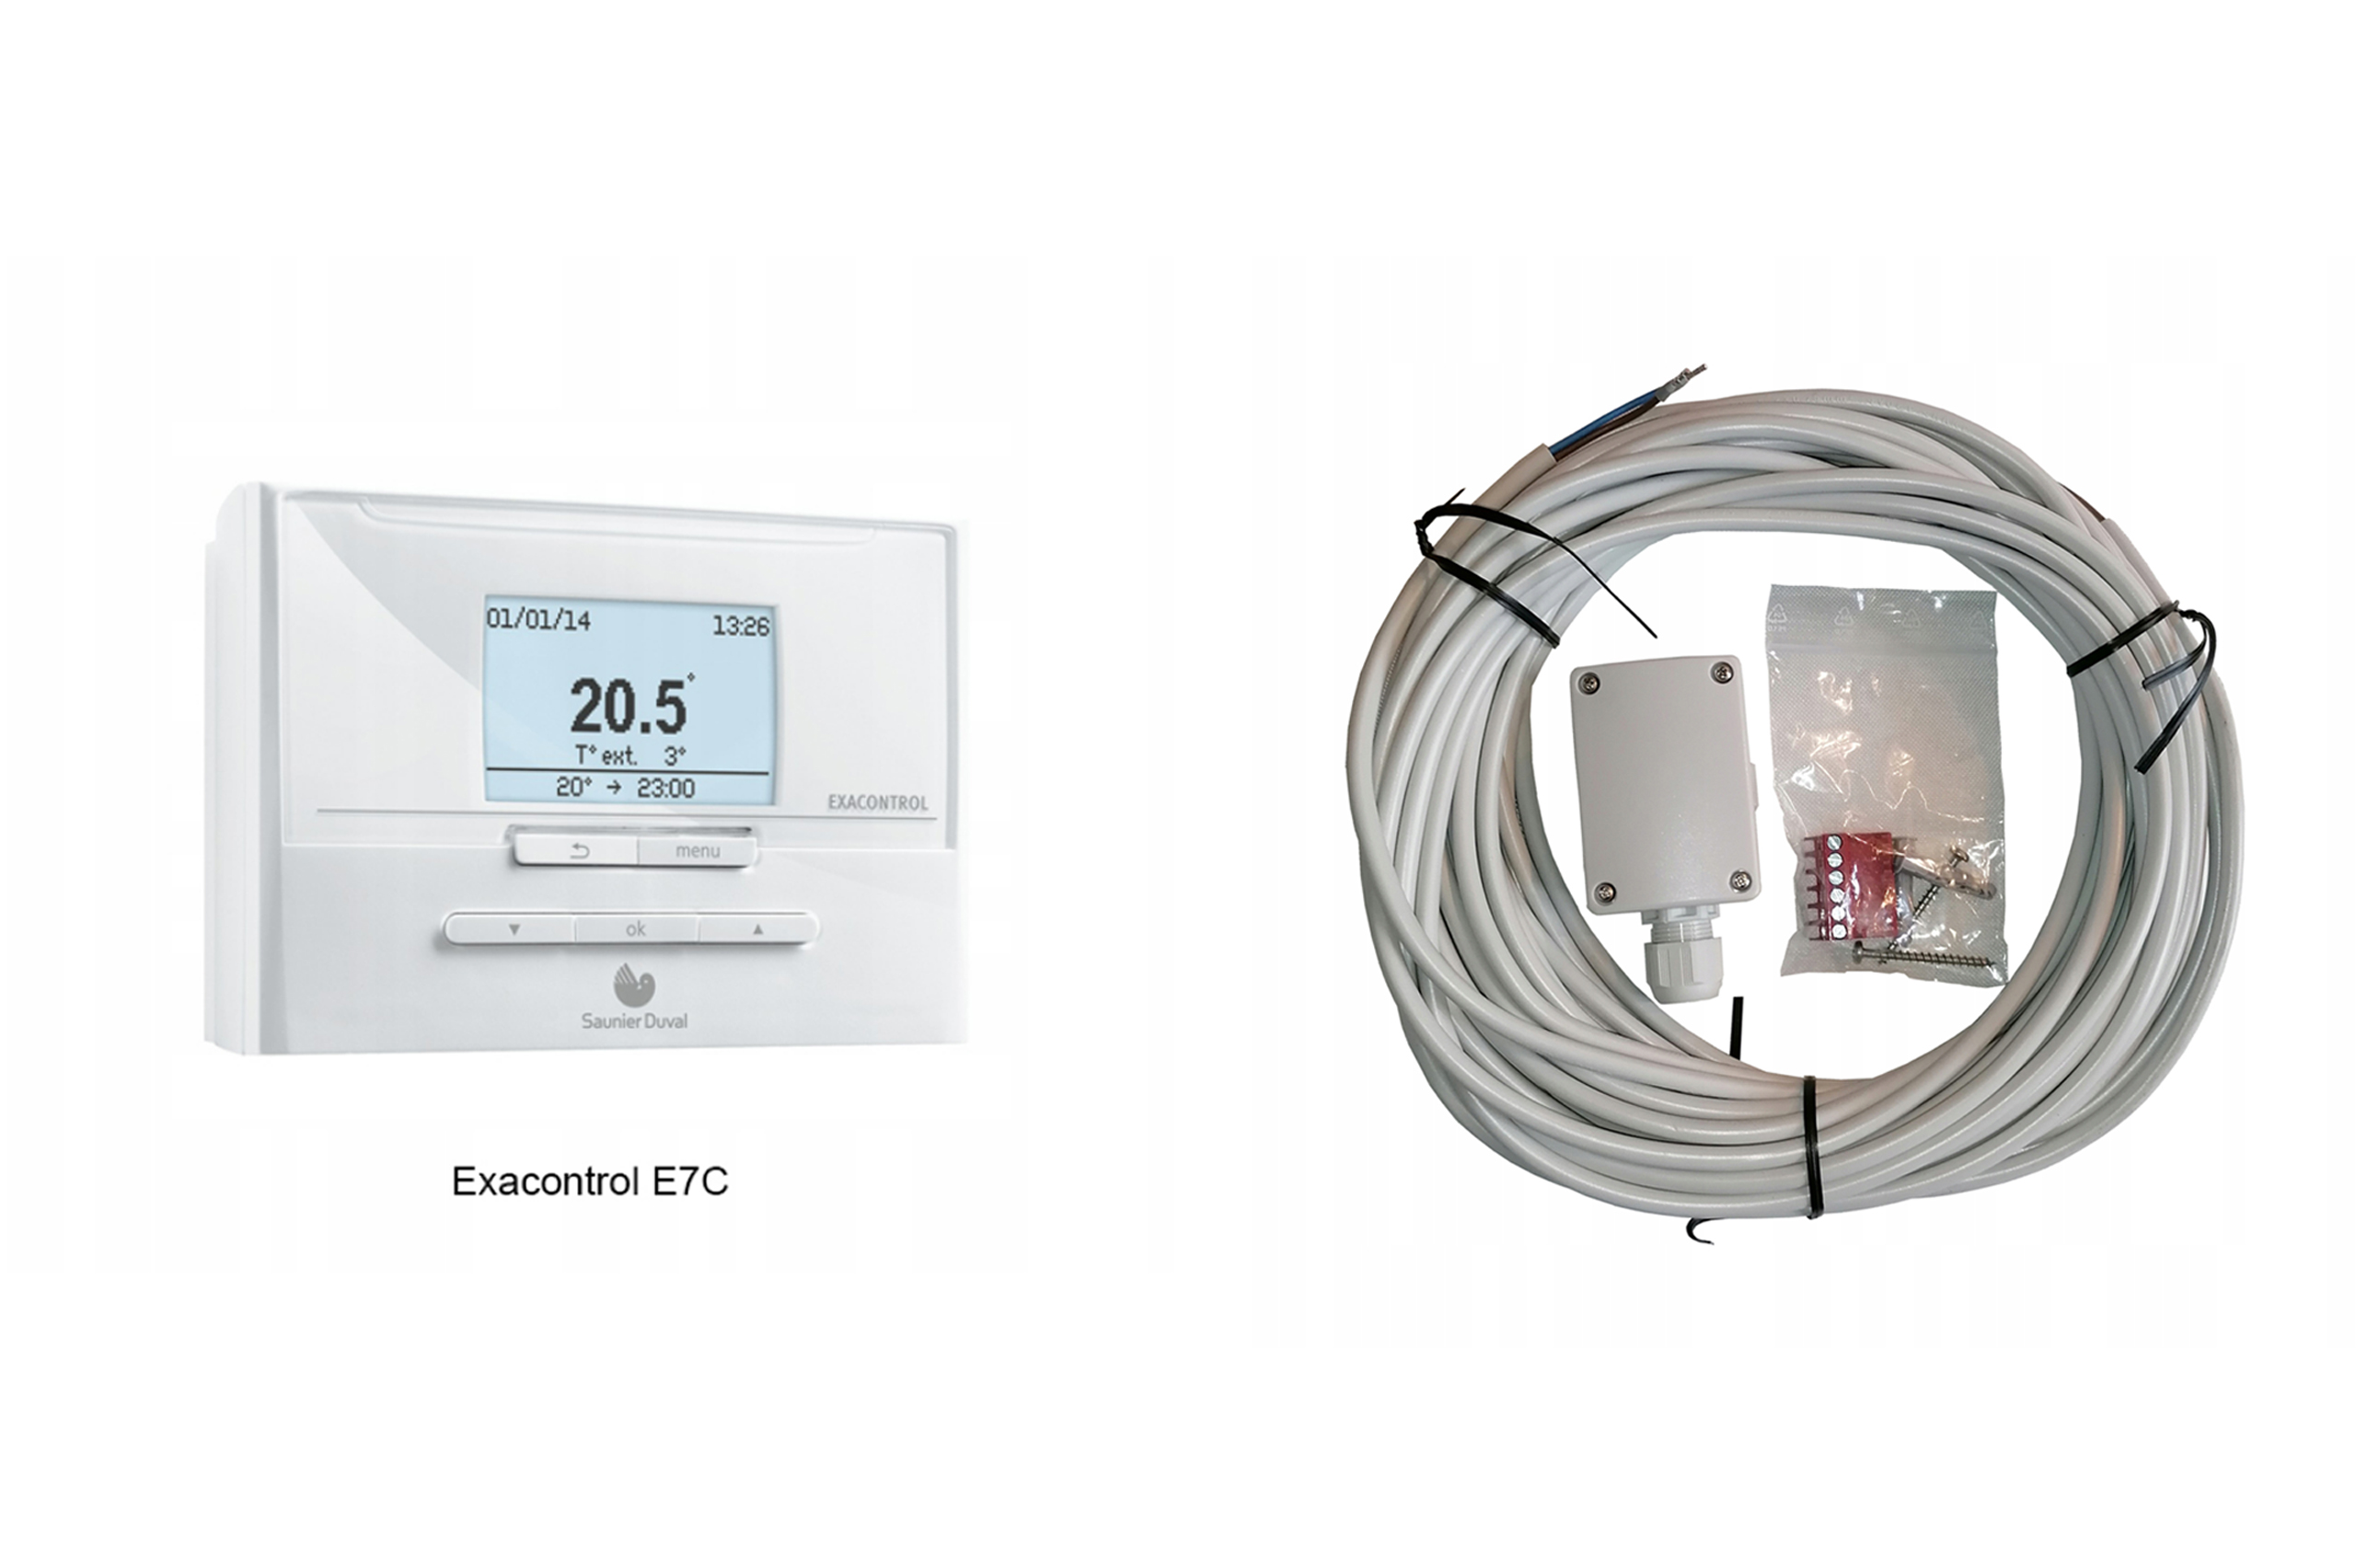 termostato saunier duval exacontrol E7 c